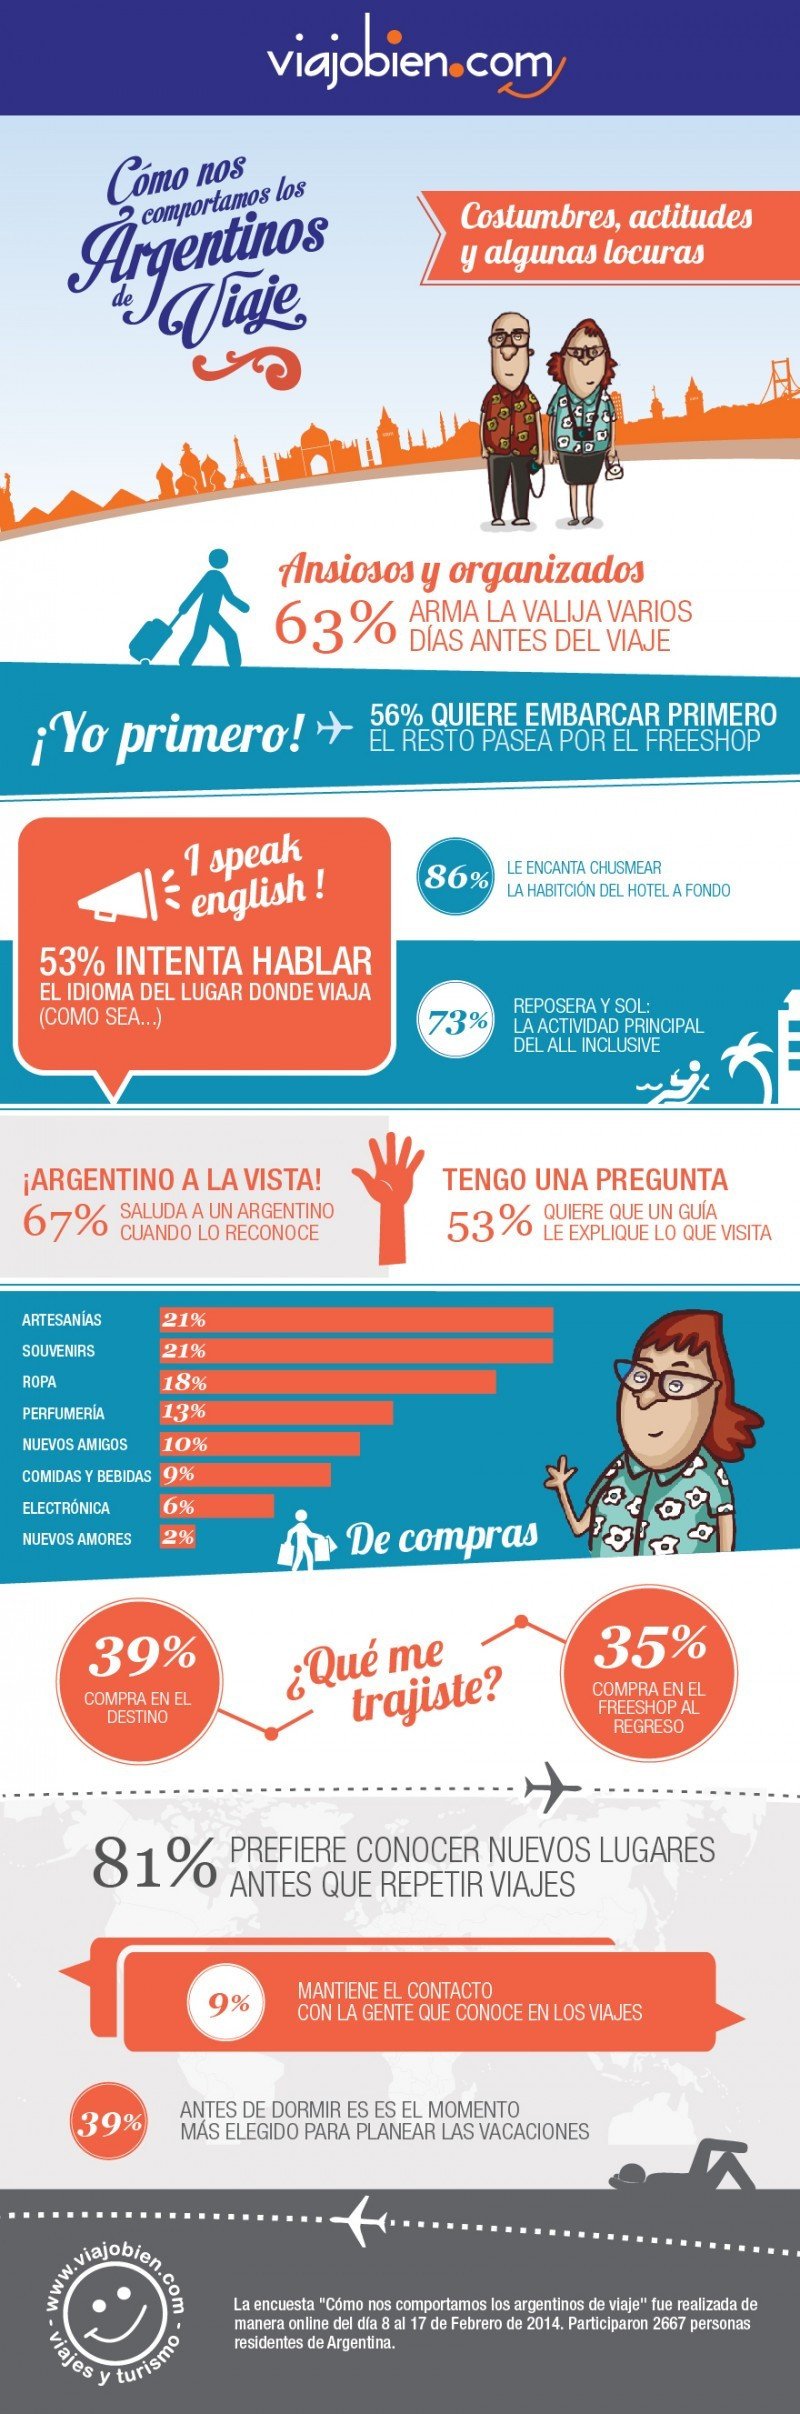 Infografía: actitudes del turista argentino. CLICK PARA AMPLIAR IMAGEN.